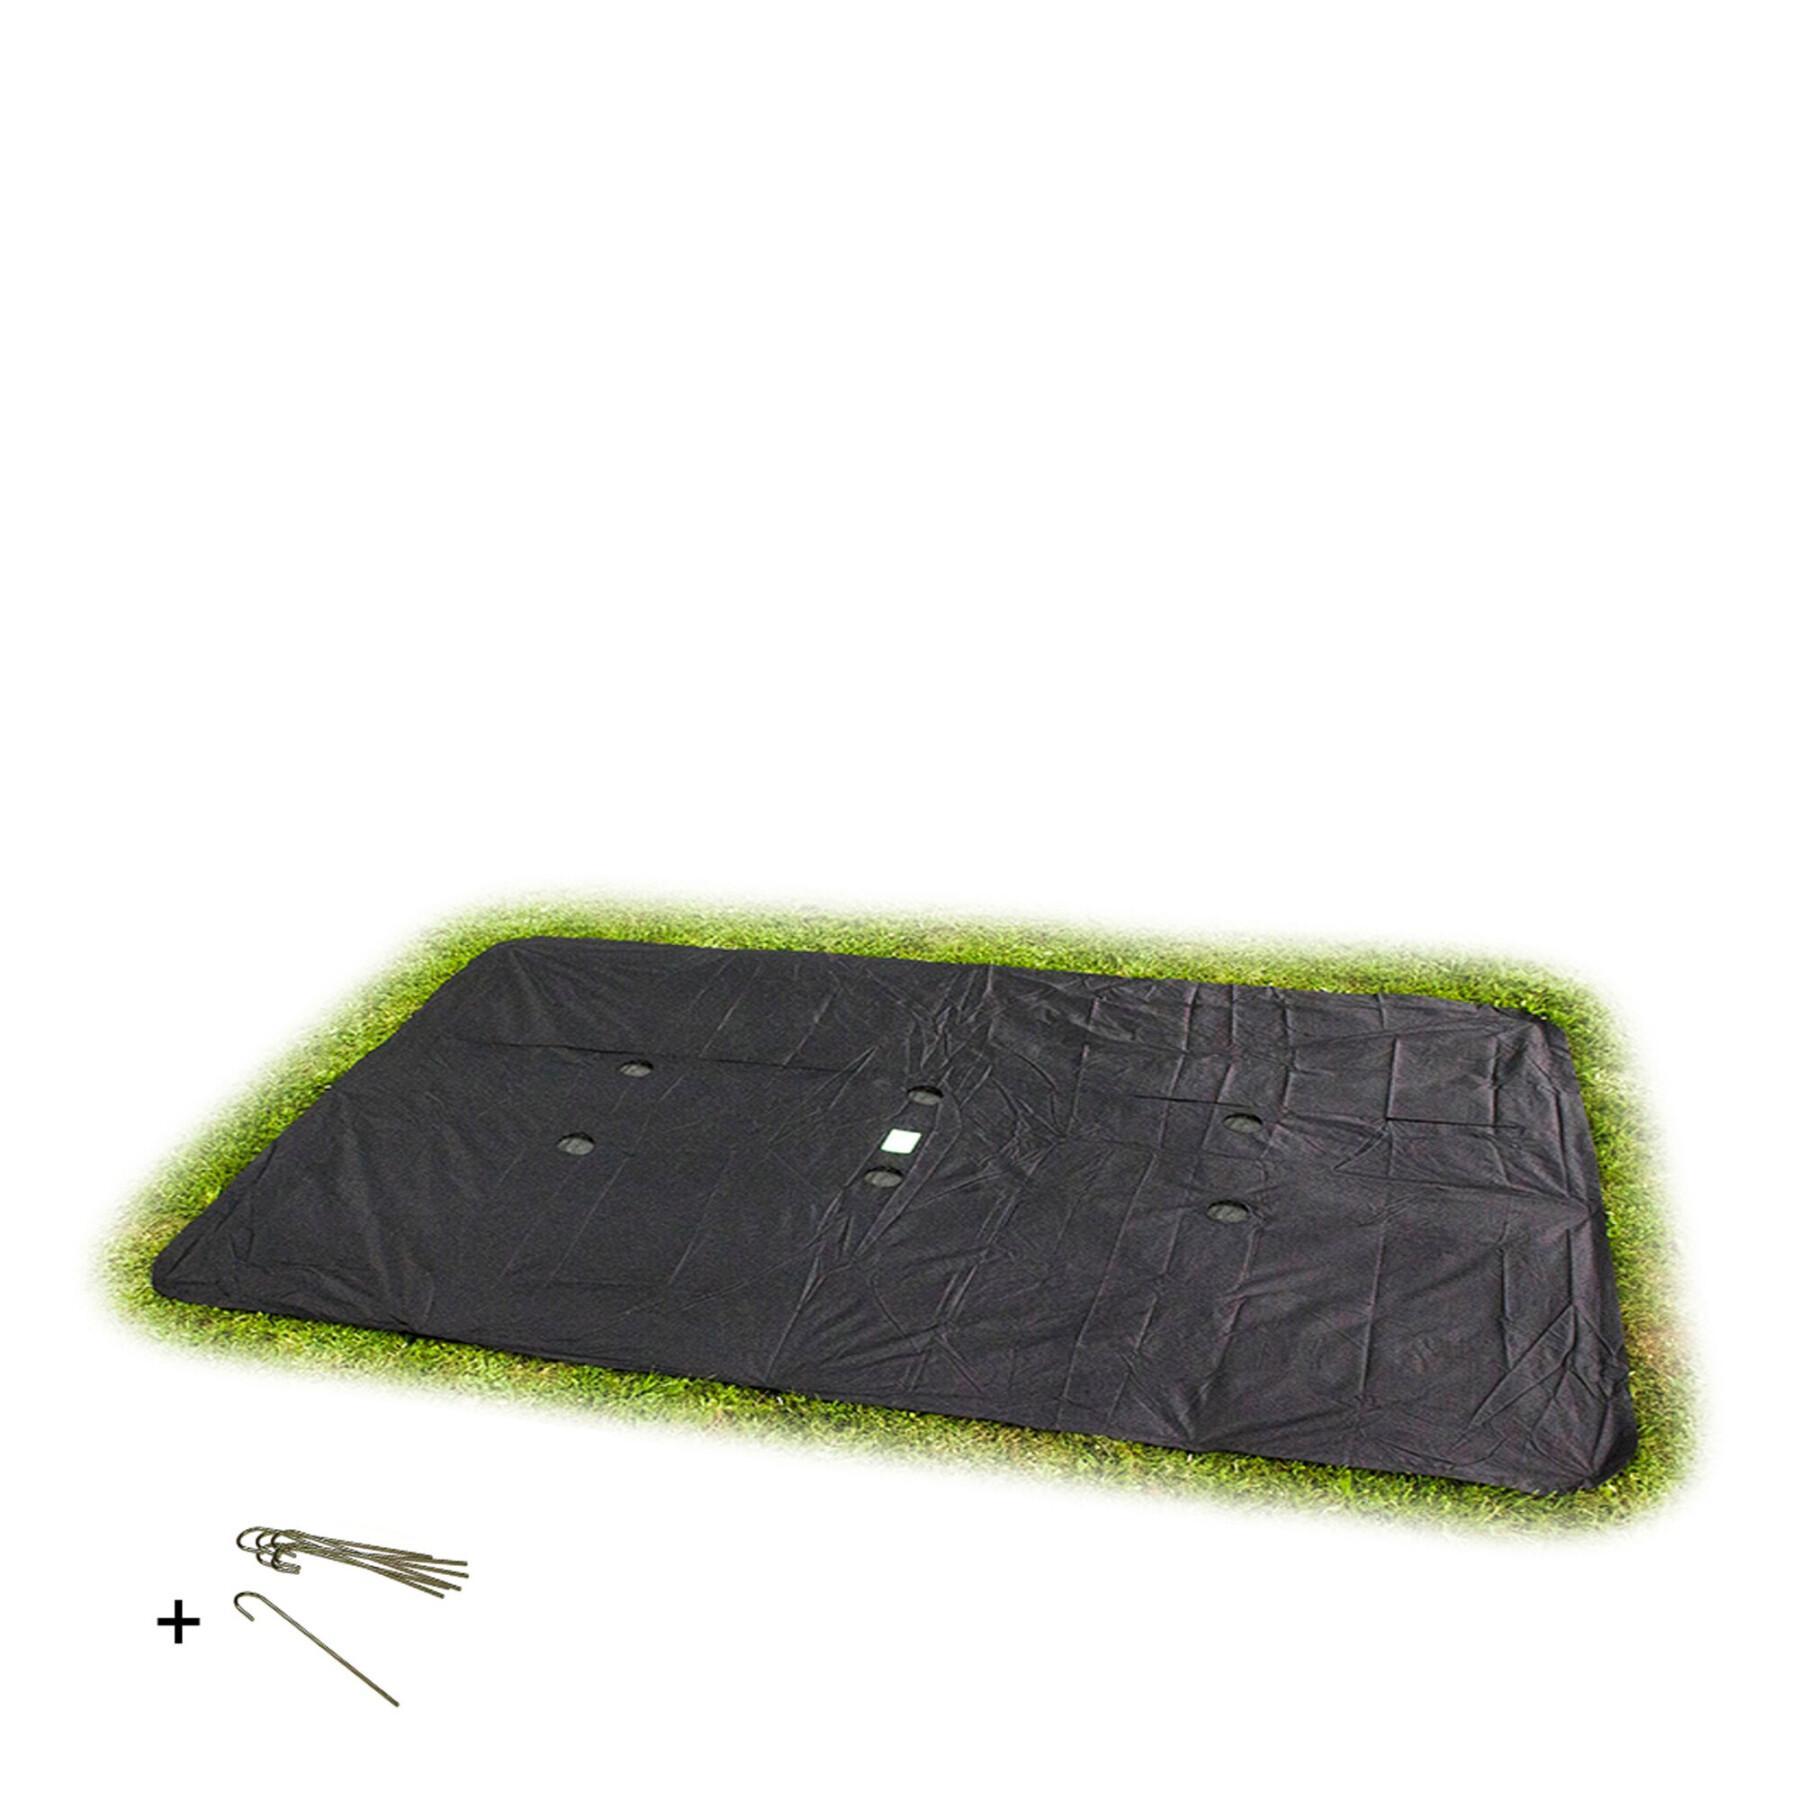 Cubierta protectora rectangular para la cama elástica en el suelo Exit Toys 305 x 519 cm